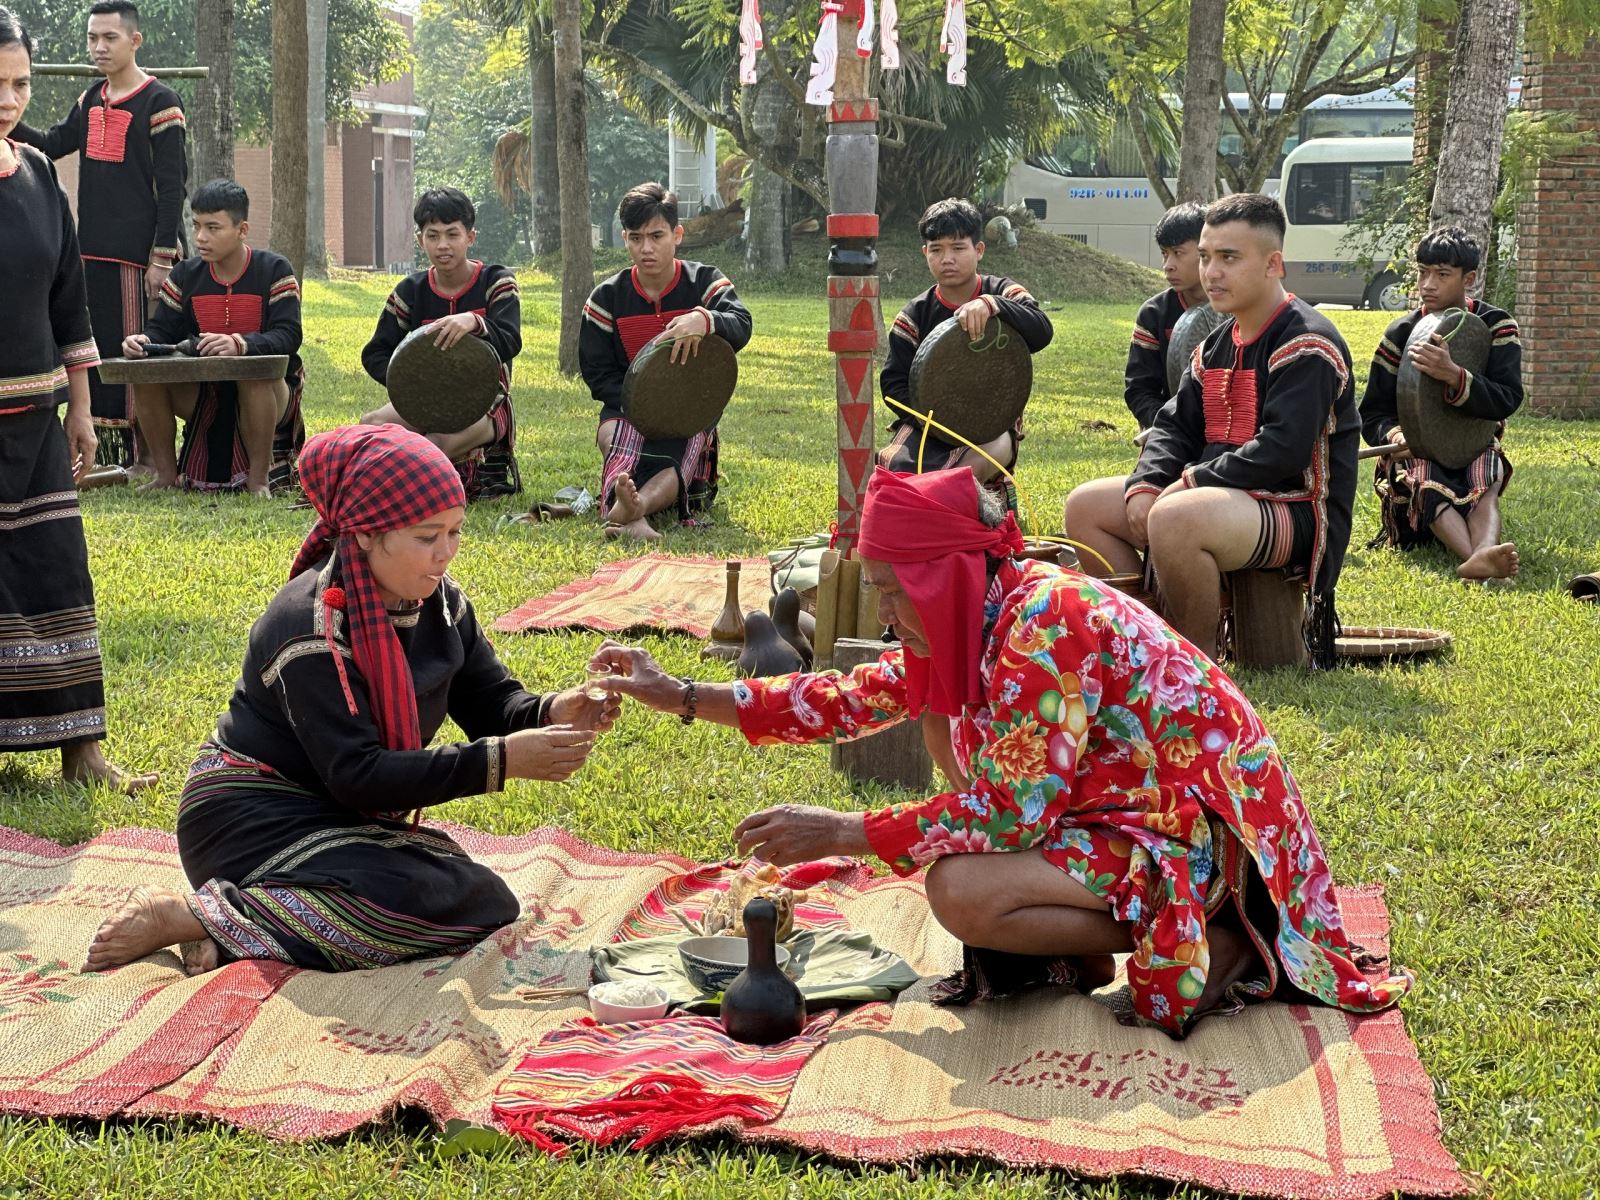 Tái hiện nghi lễ Cúng sức khỏe (Nga yang asei mlei) của dân tộc Ê Đê ở Đắk Lắk